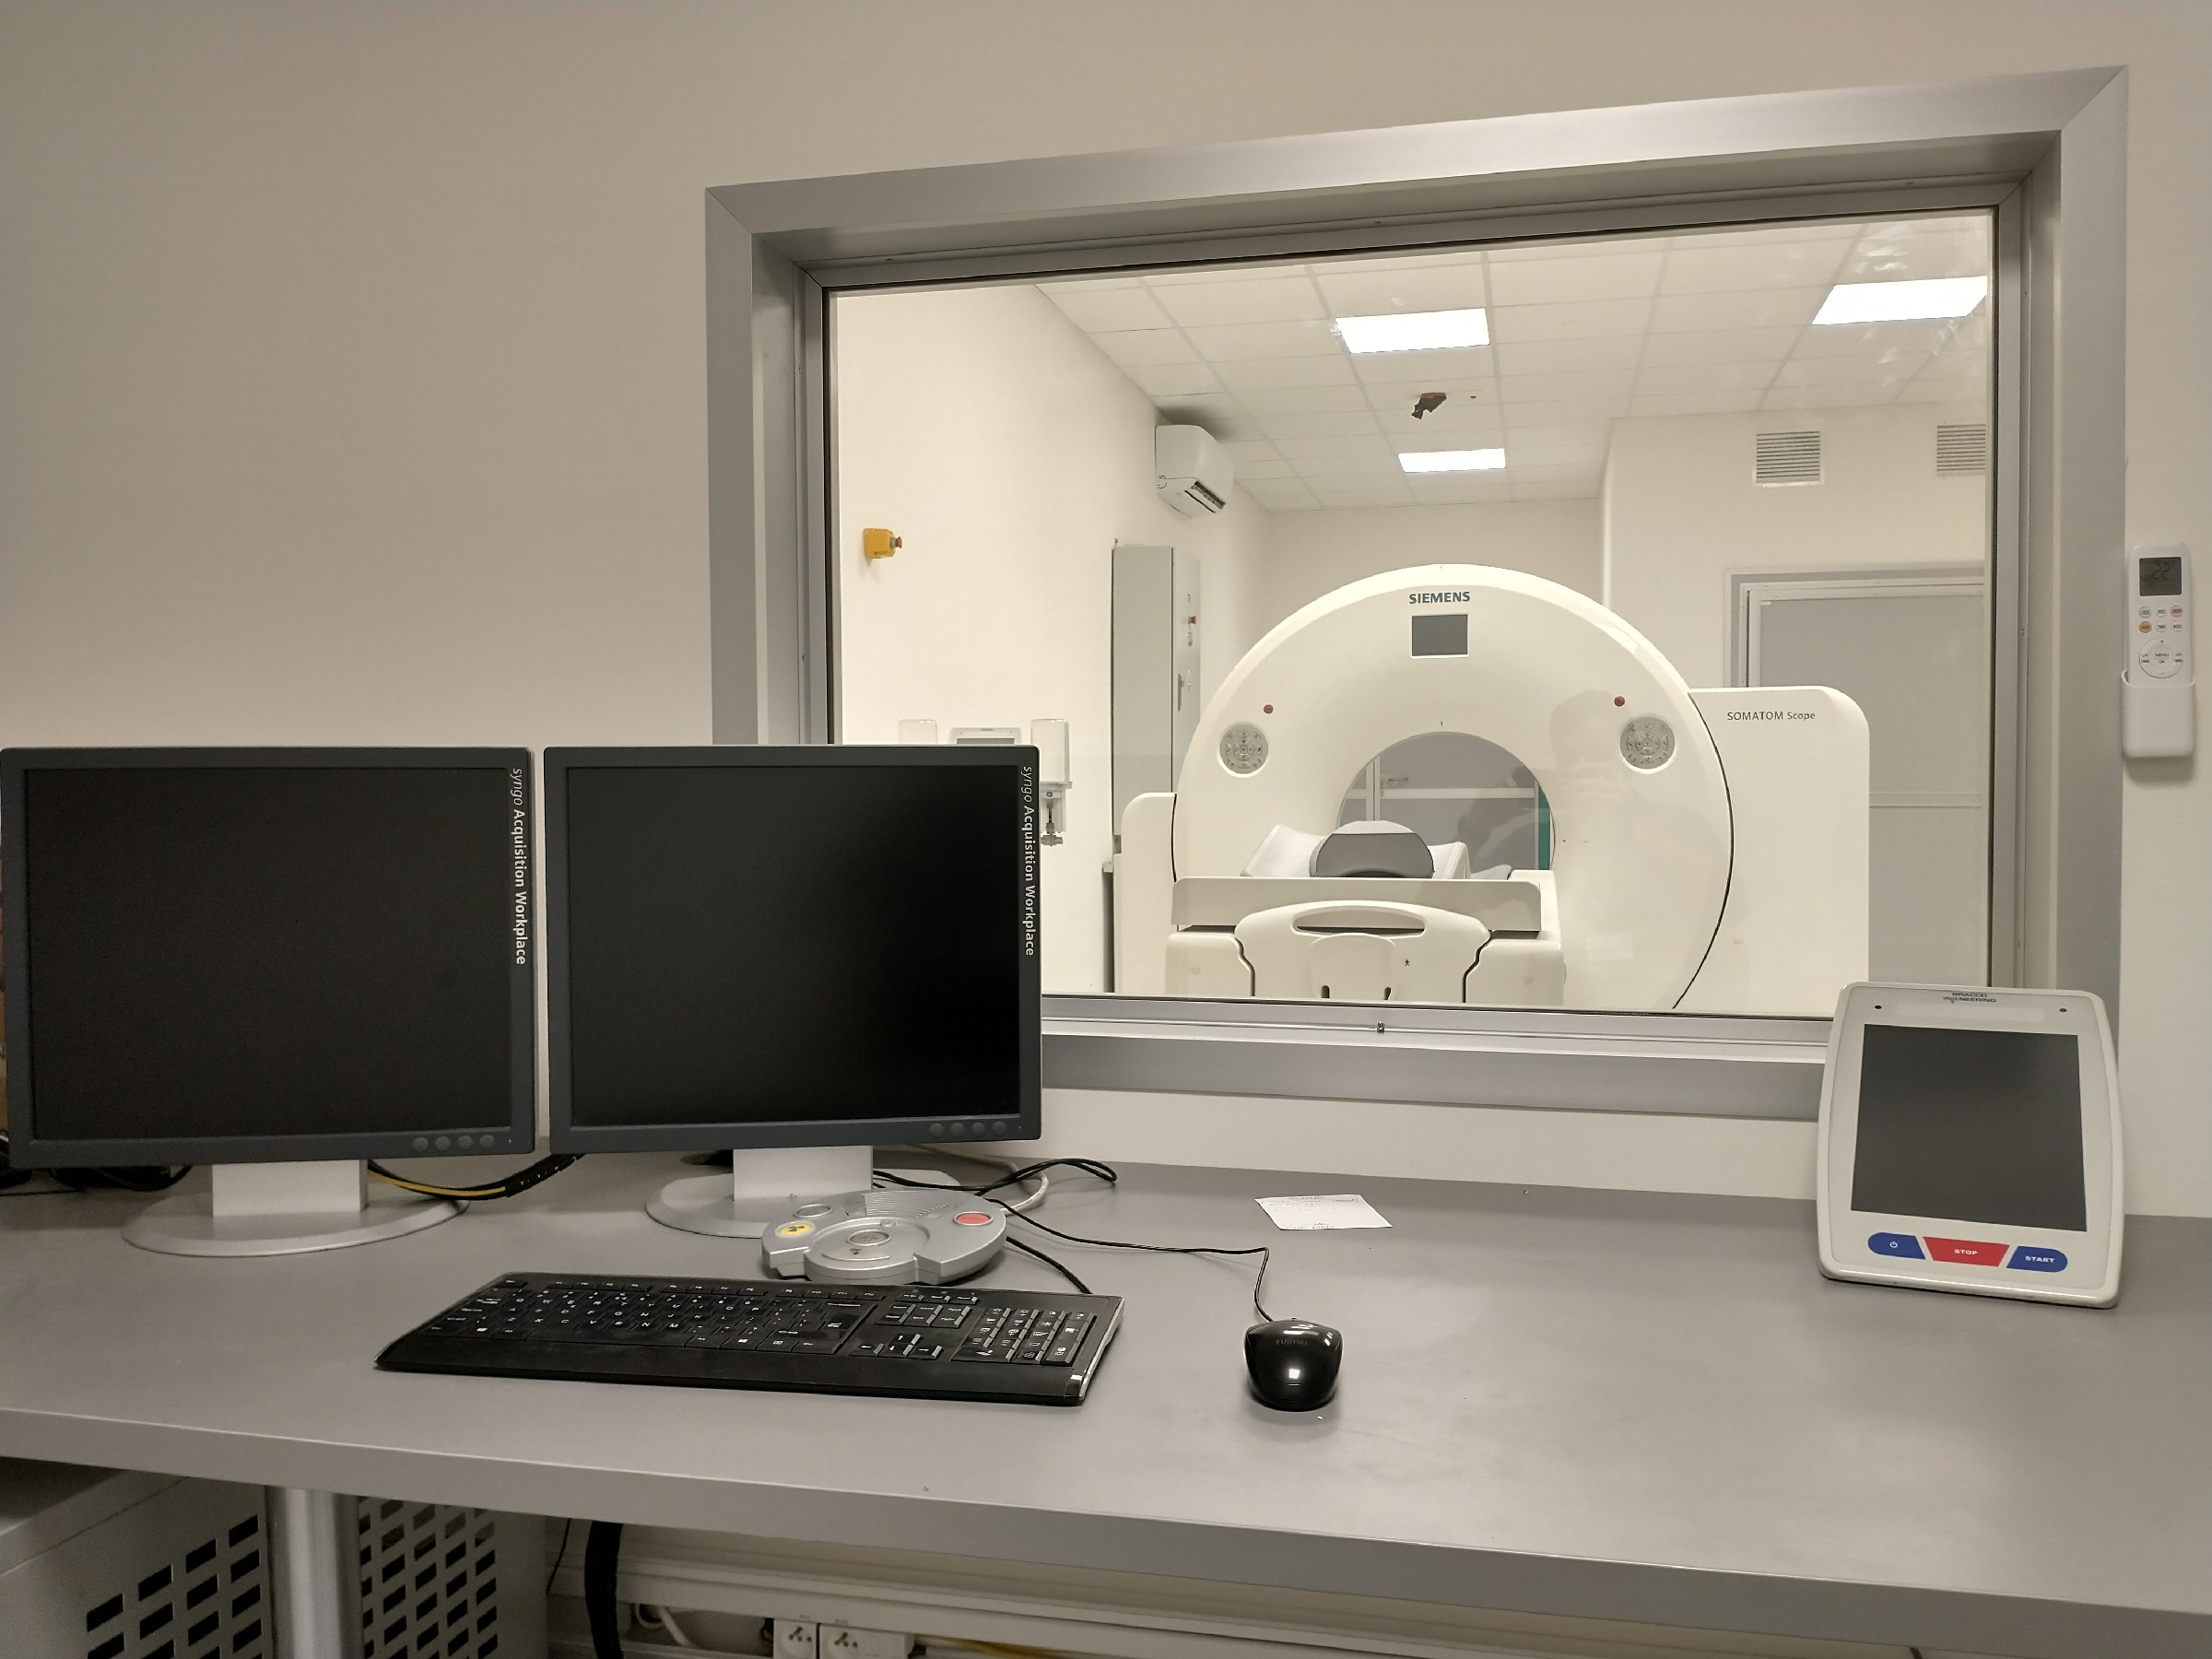 na obrazu widać dwa monitory stojące koło siebie wraz z klawiatura i myszą koloru czarnego, za oknem widoczne urządzenia do tomografii komputerowej. 